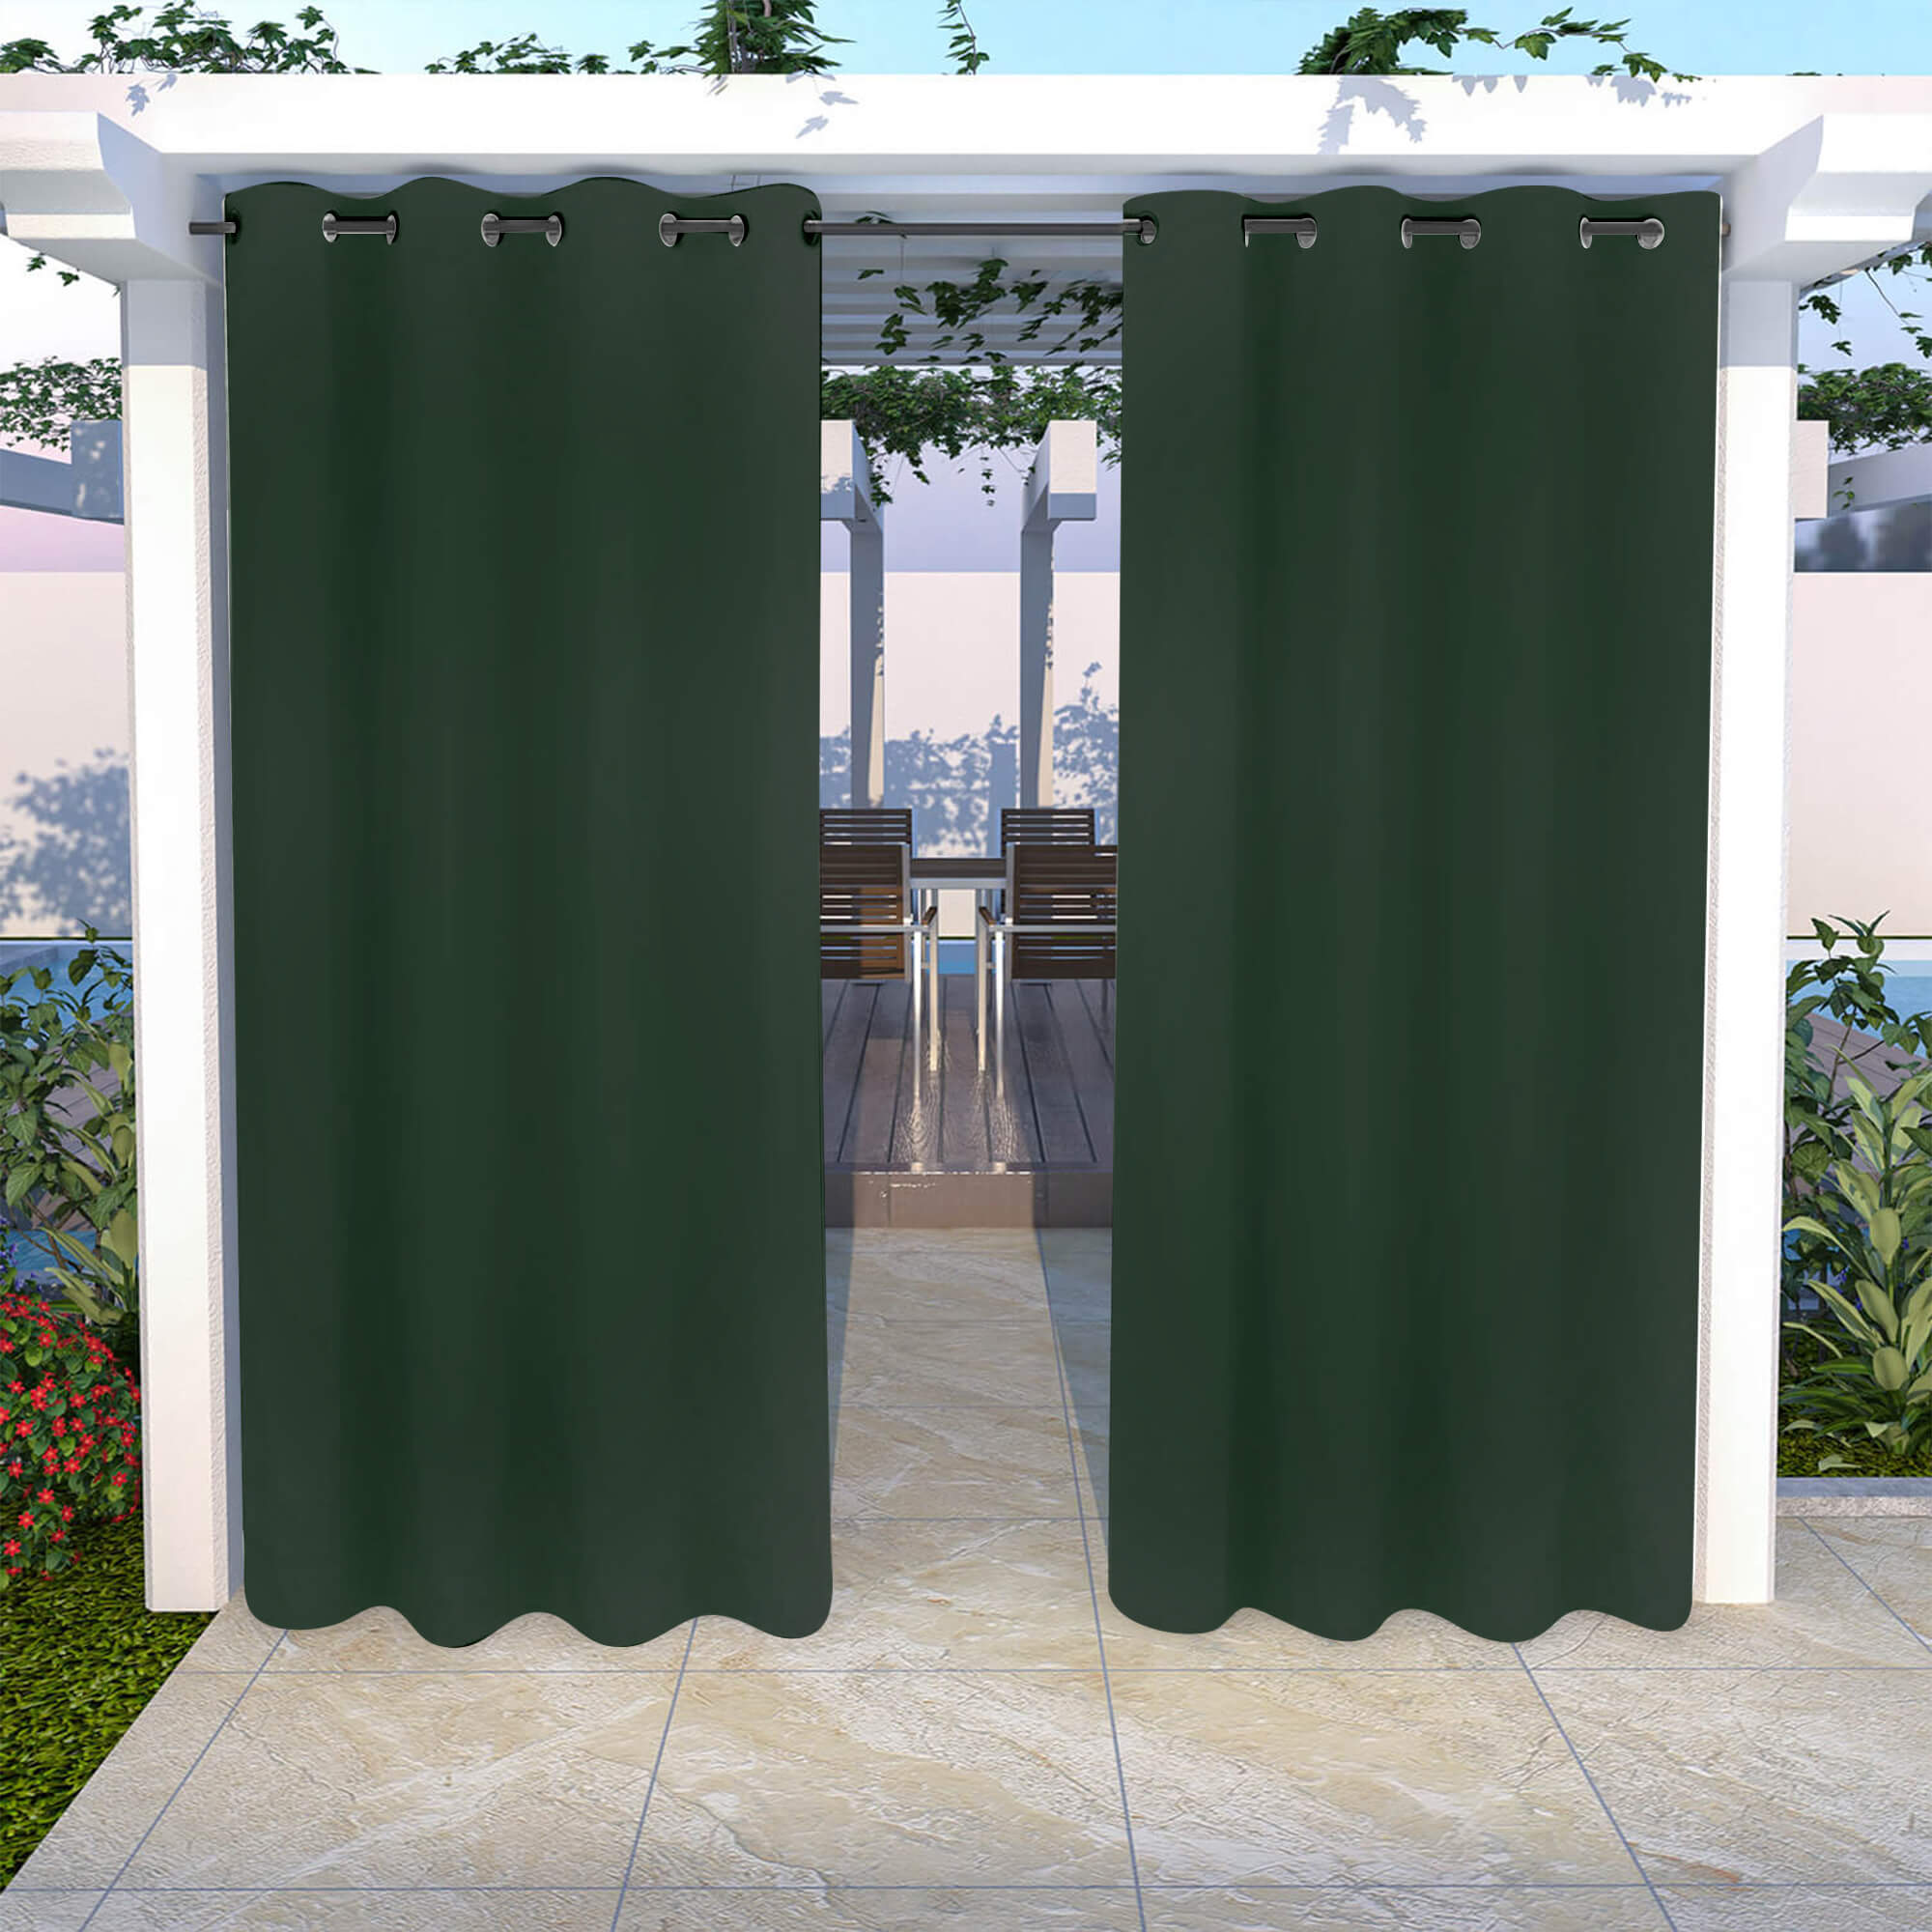 Snowcity Outdoor Curtains Waterproof Grommet Top 1 Panel - Dark Green